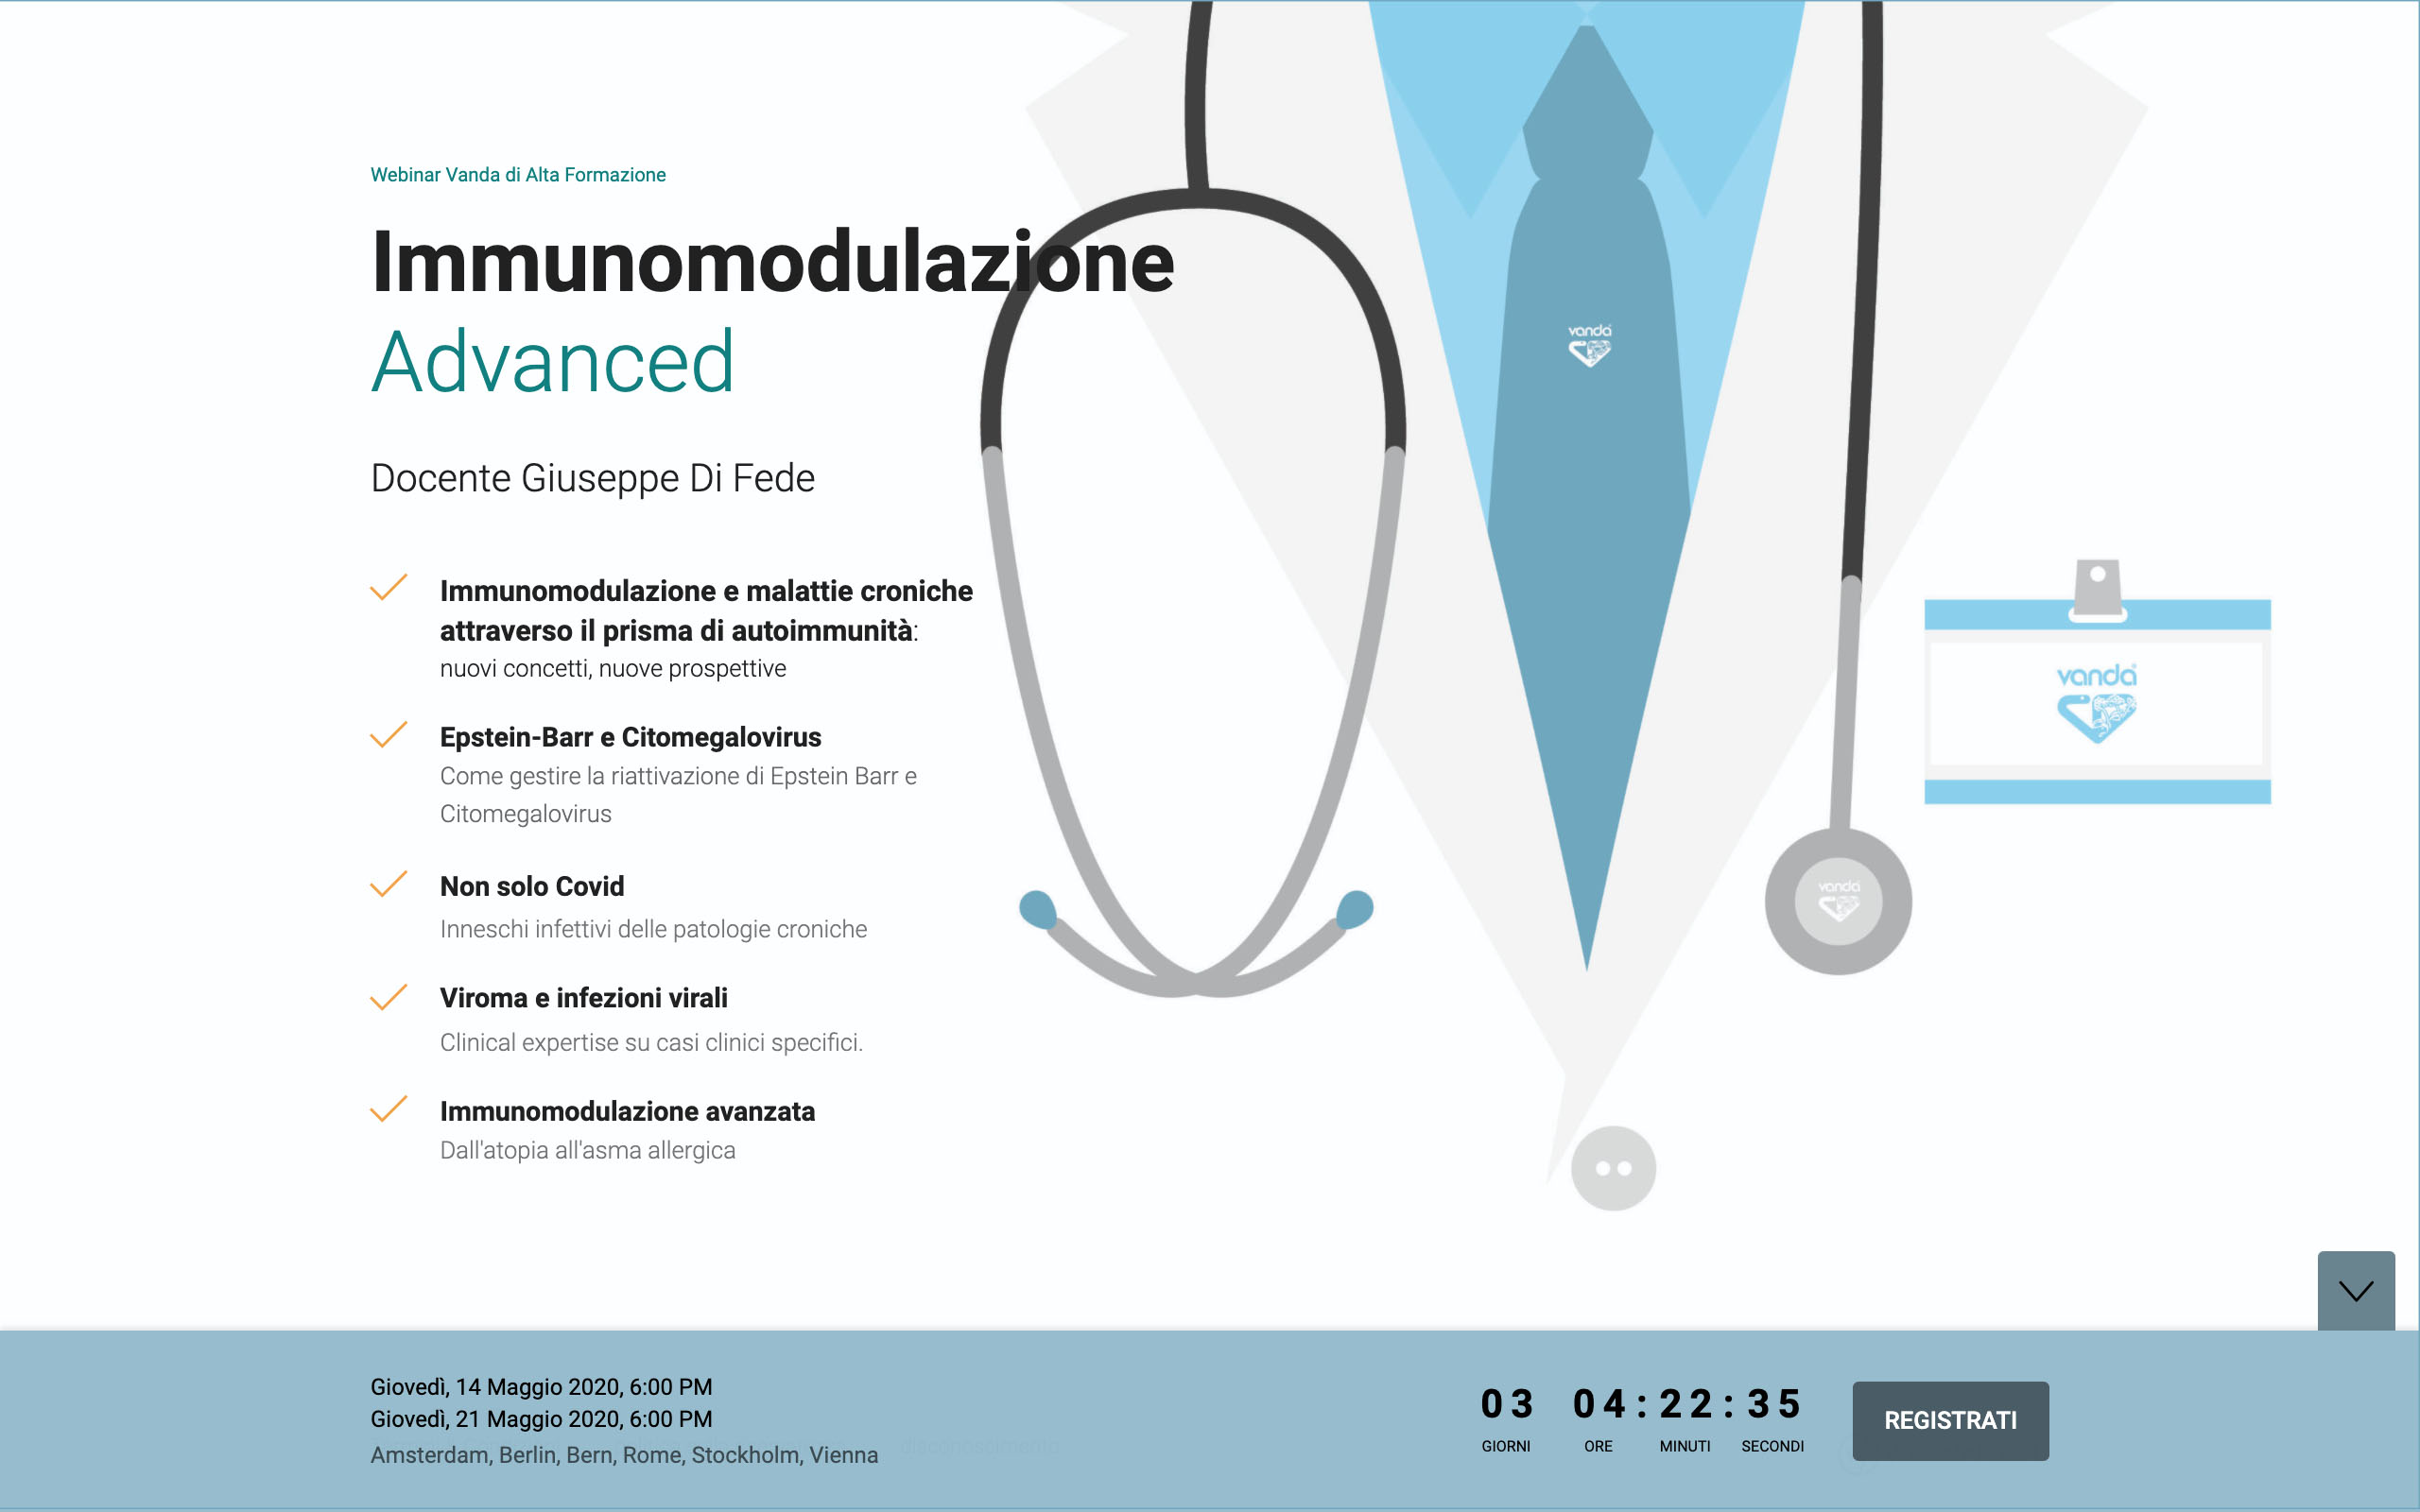 Immunomodulazione Advanced. Immunomodulazione e malattie croniche attraverso il prisma dell’ autoimmunità